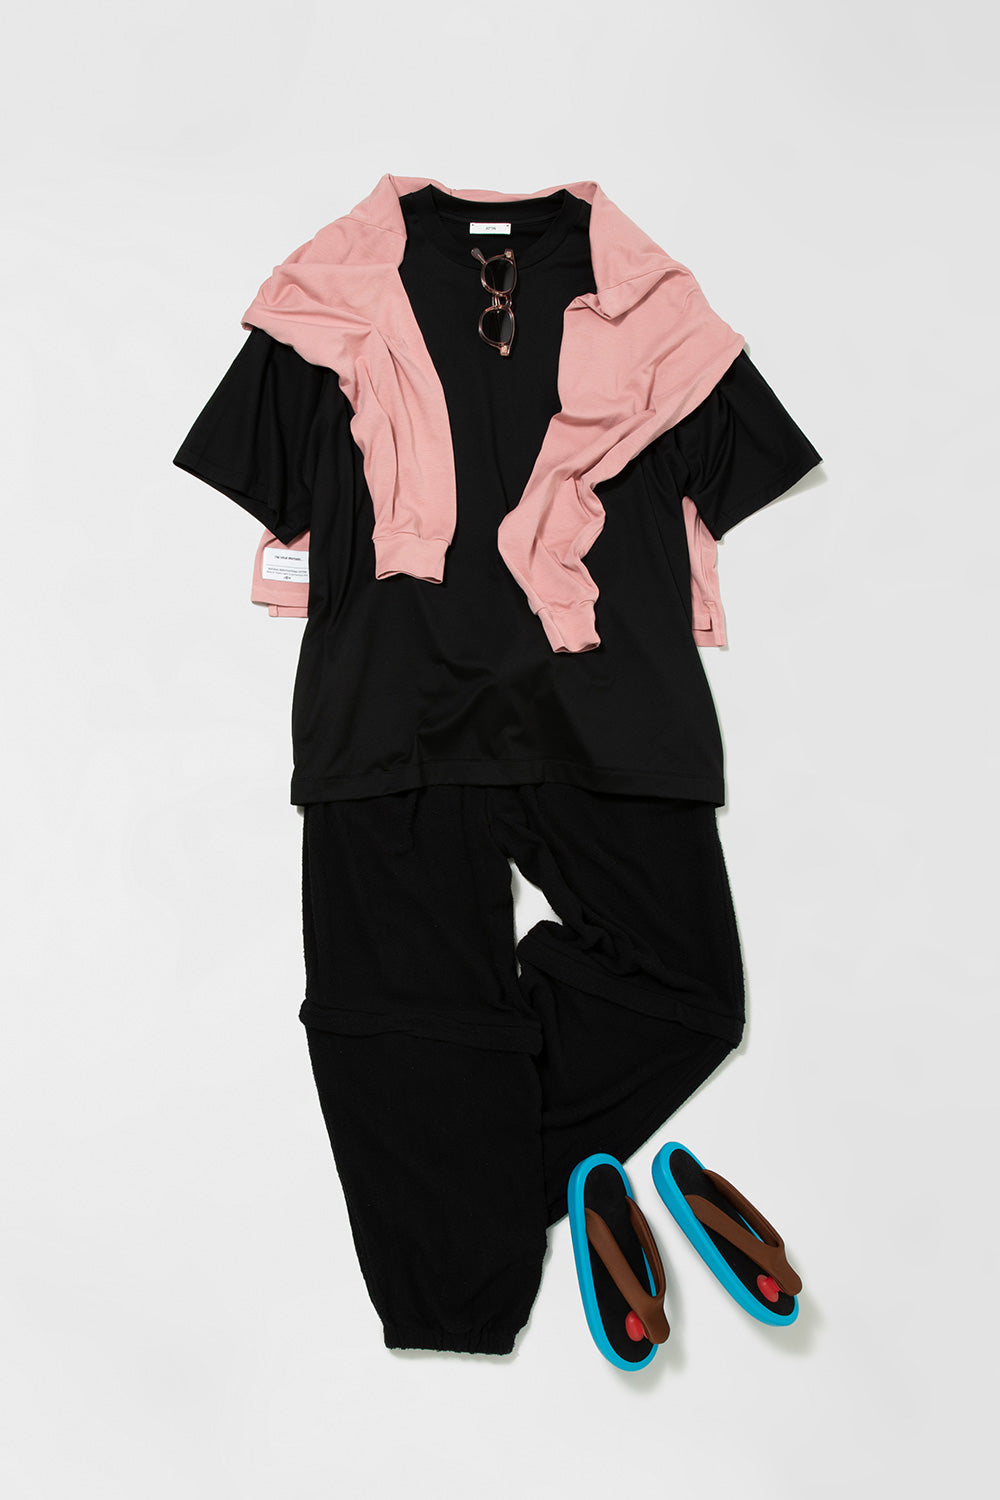 イノウエブラザーズのピンクのロングTシャツとエイトンの黒いTシャツにコモリのパンツを合わせたスタイリング